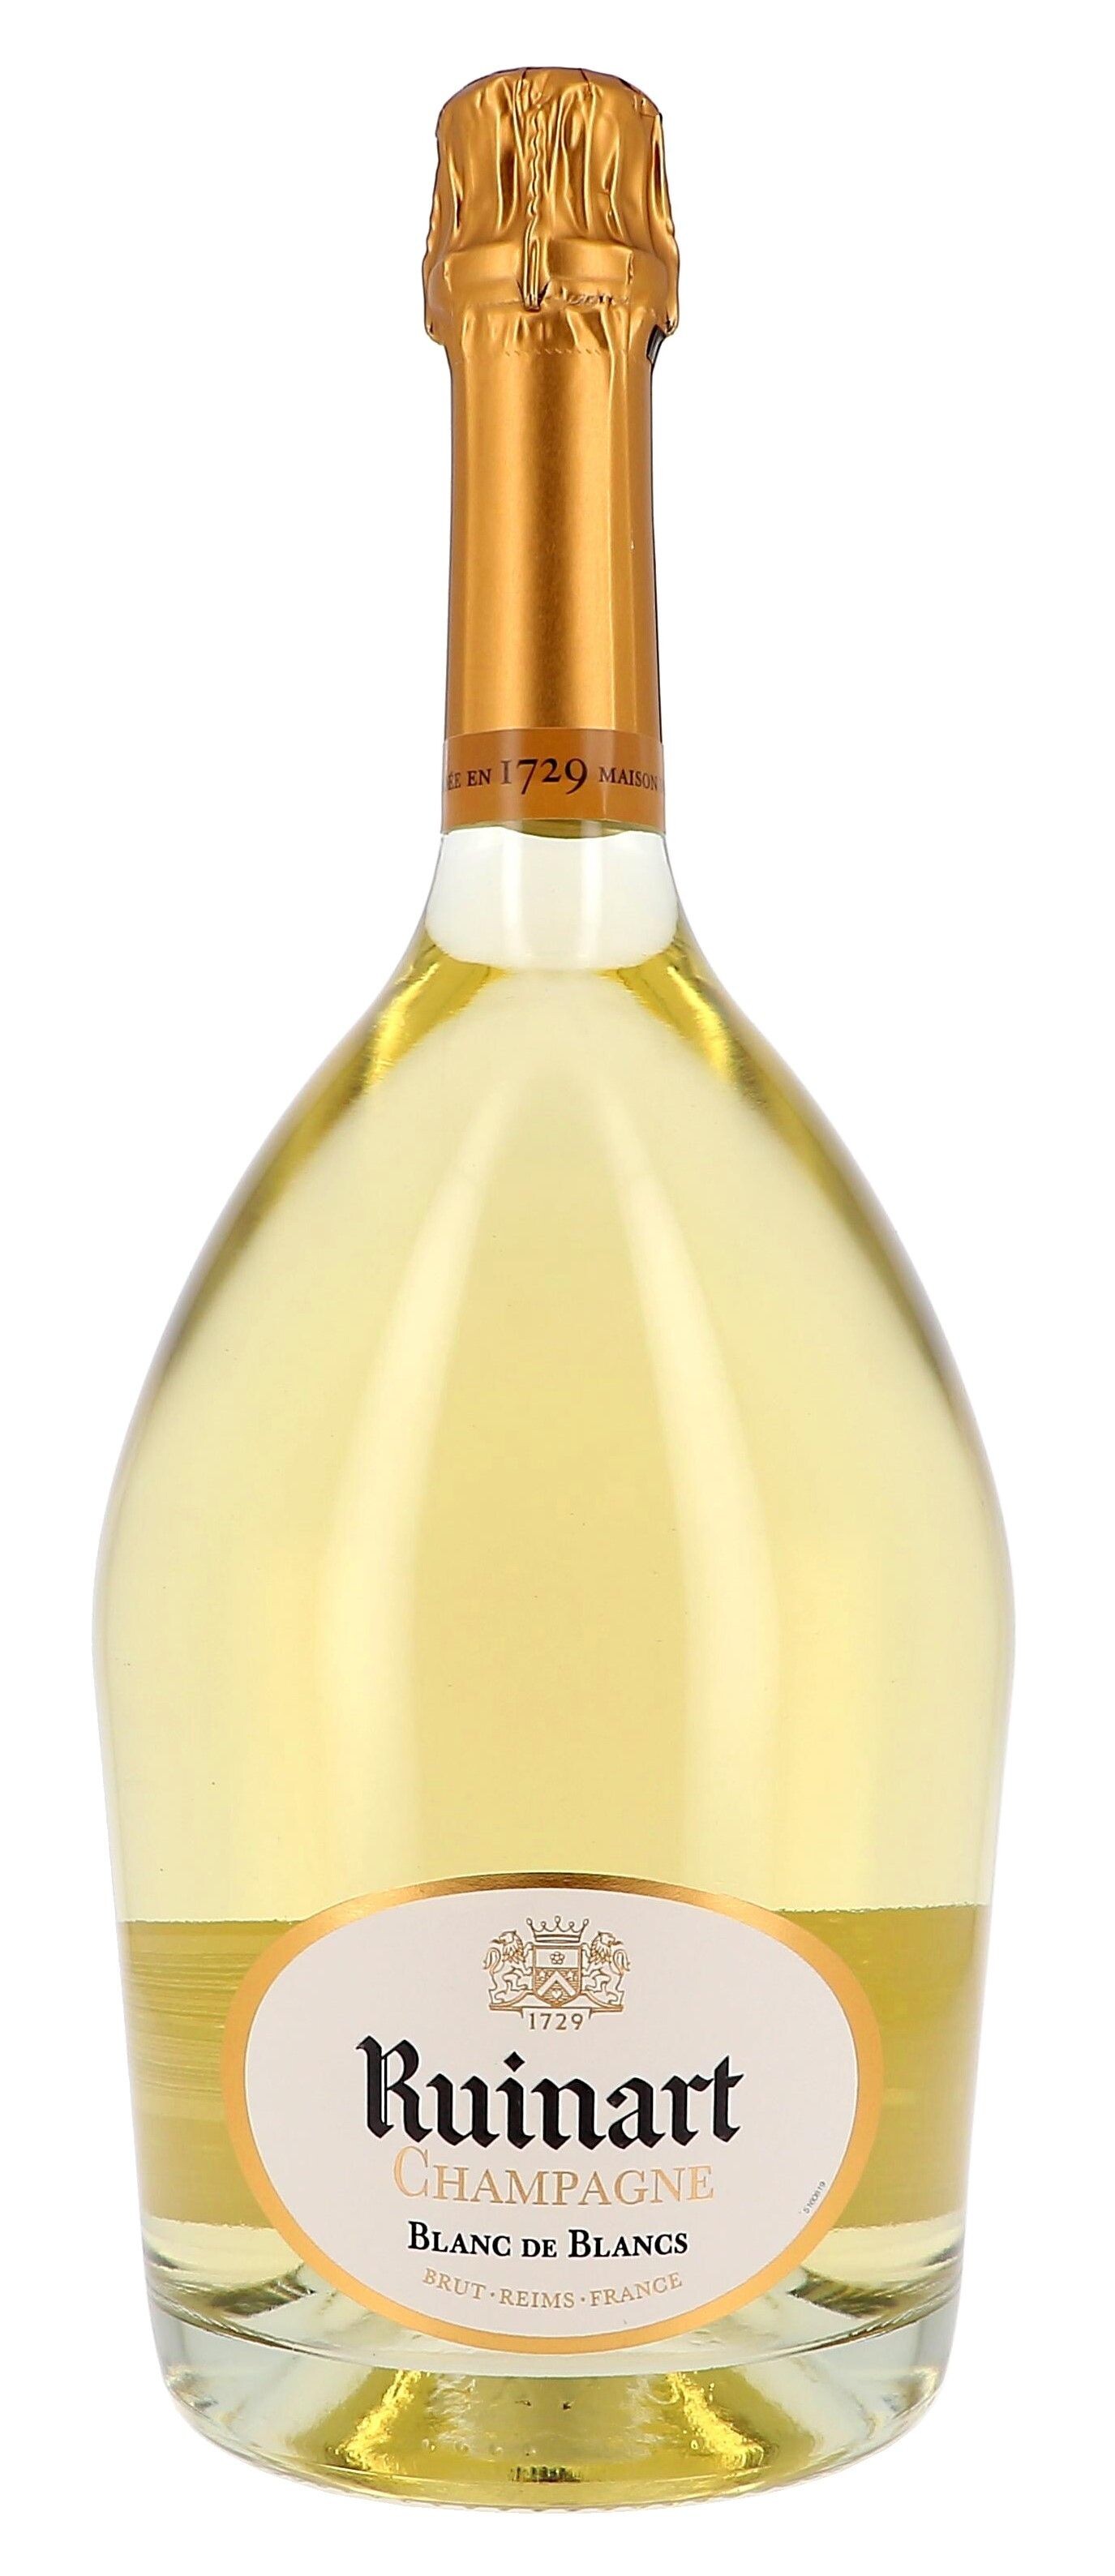 Champagne Ruinart Blanc de Blancs 75cl Brut 